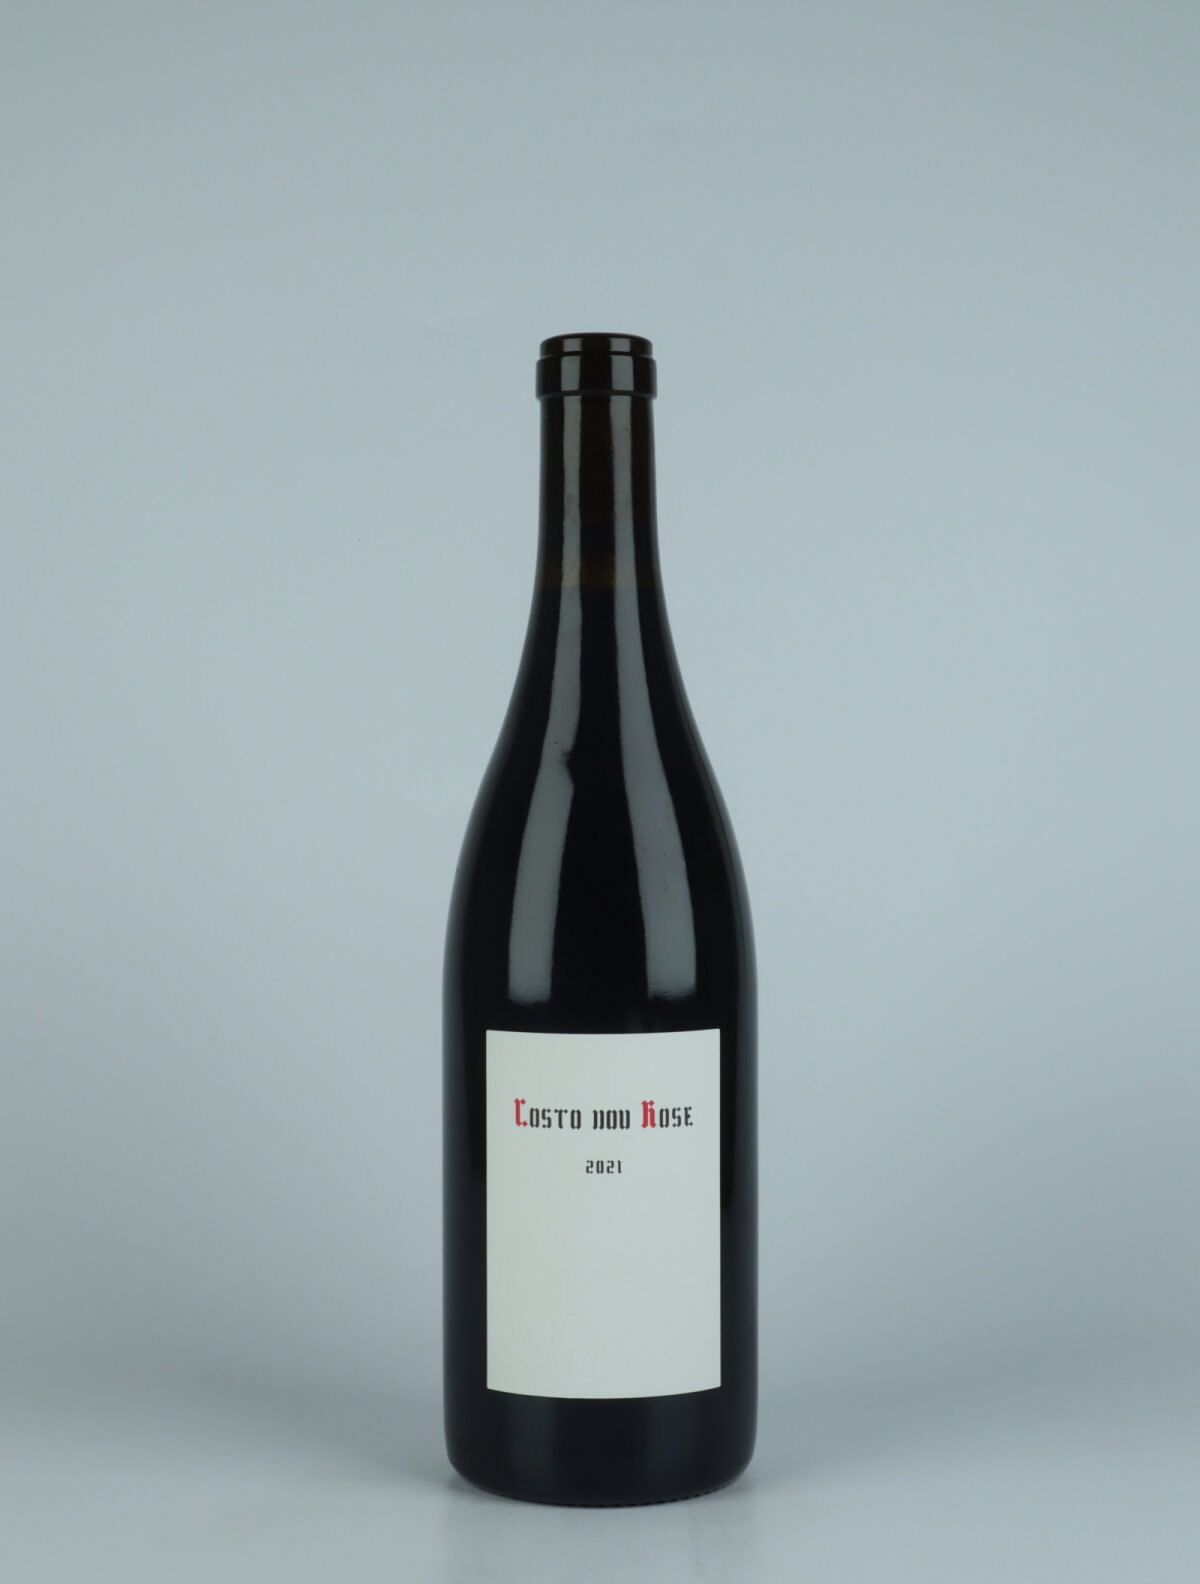 En flaske 2021 Costo Dou Rose Rødvin fra Les Frères Soulier, Rhône i Frankrig